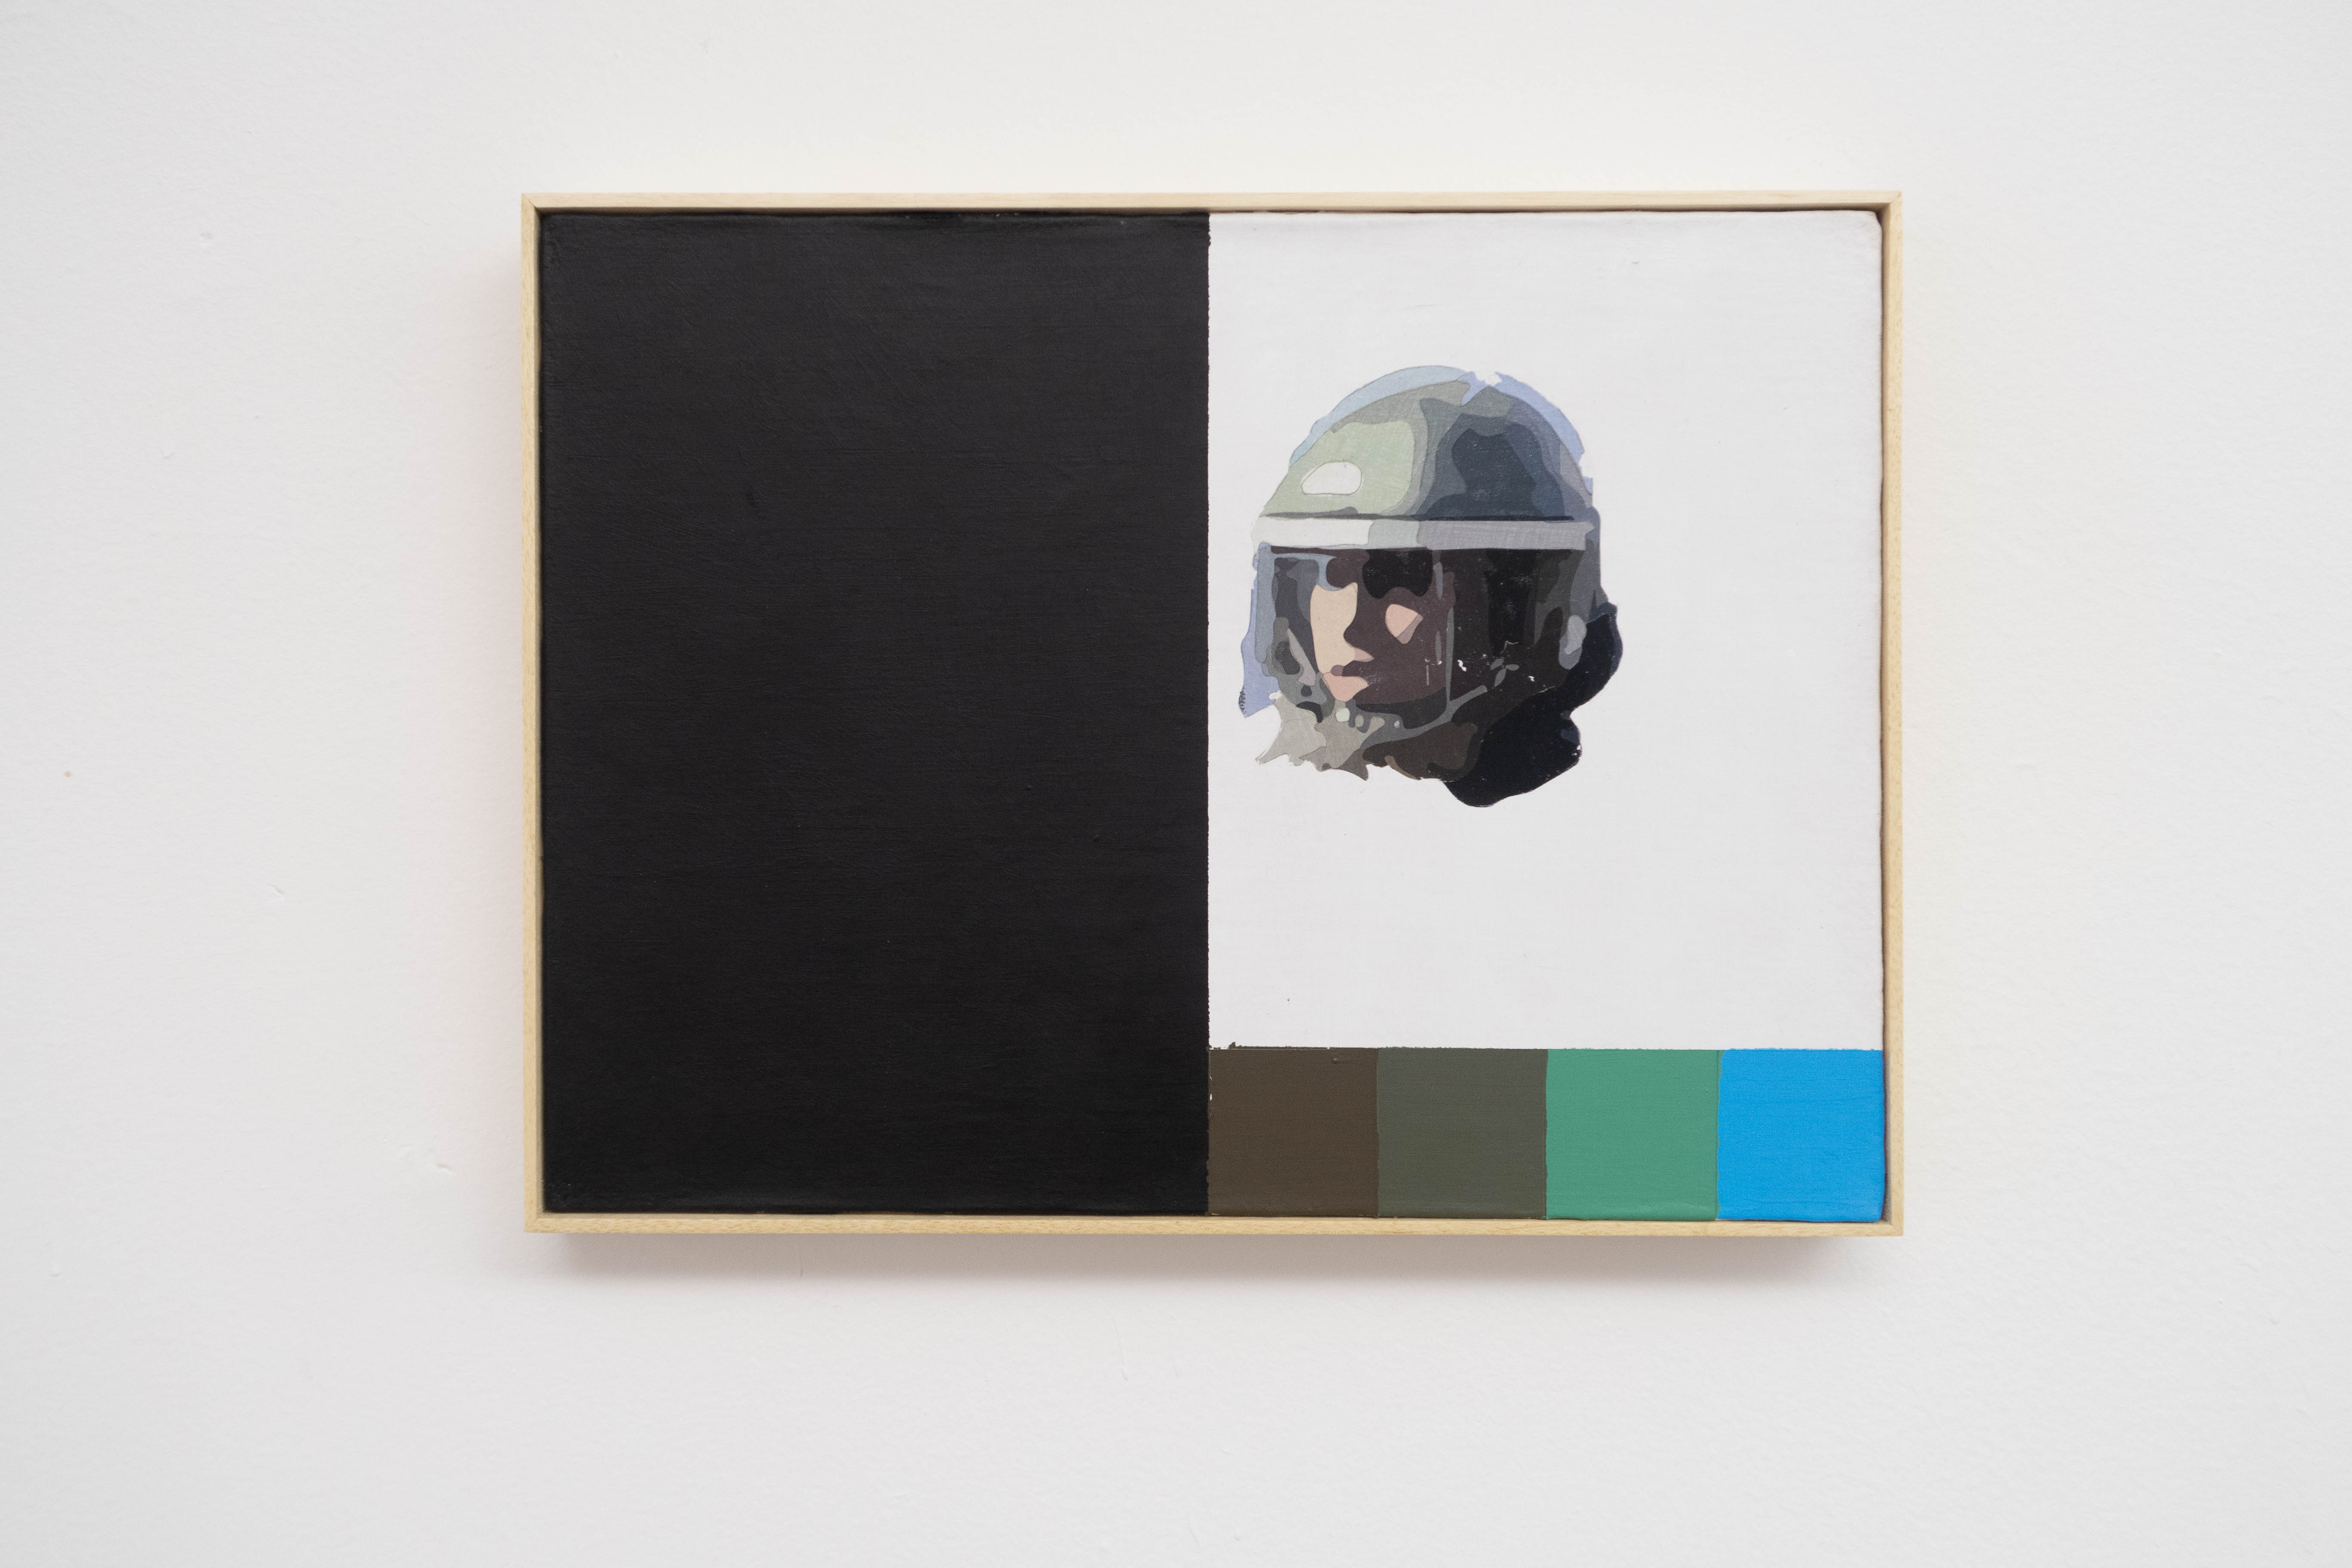 Diego Castro, [A]GRID 0419, Transparência fotográfica, tinta acrílica sobre tela, 30 x 40 cm, 2019